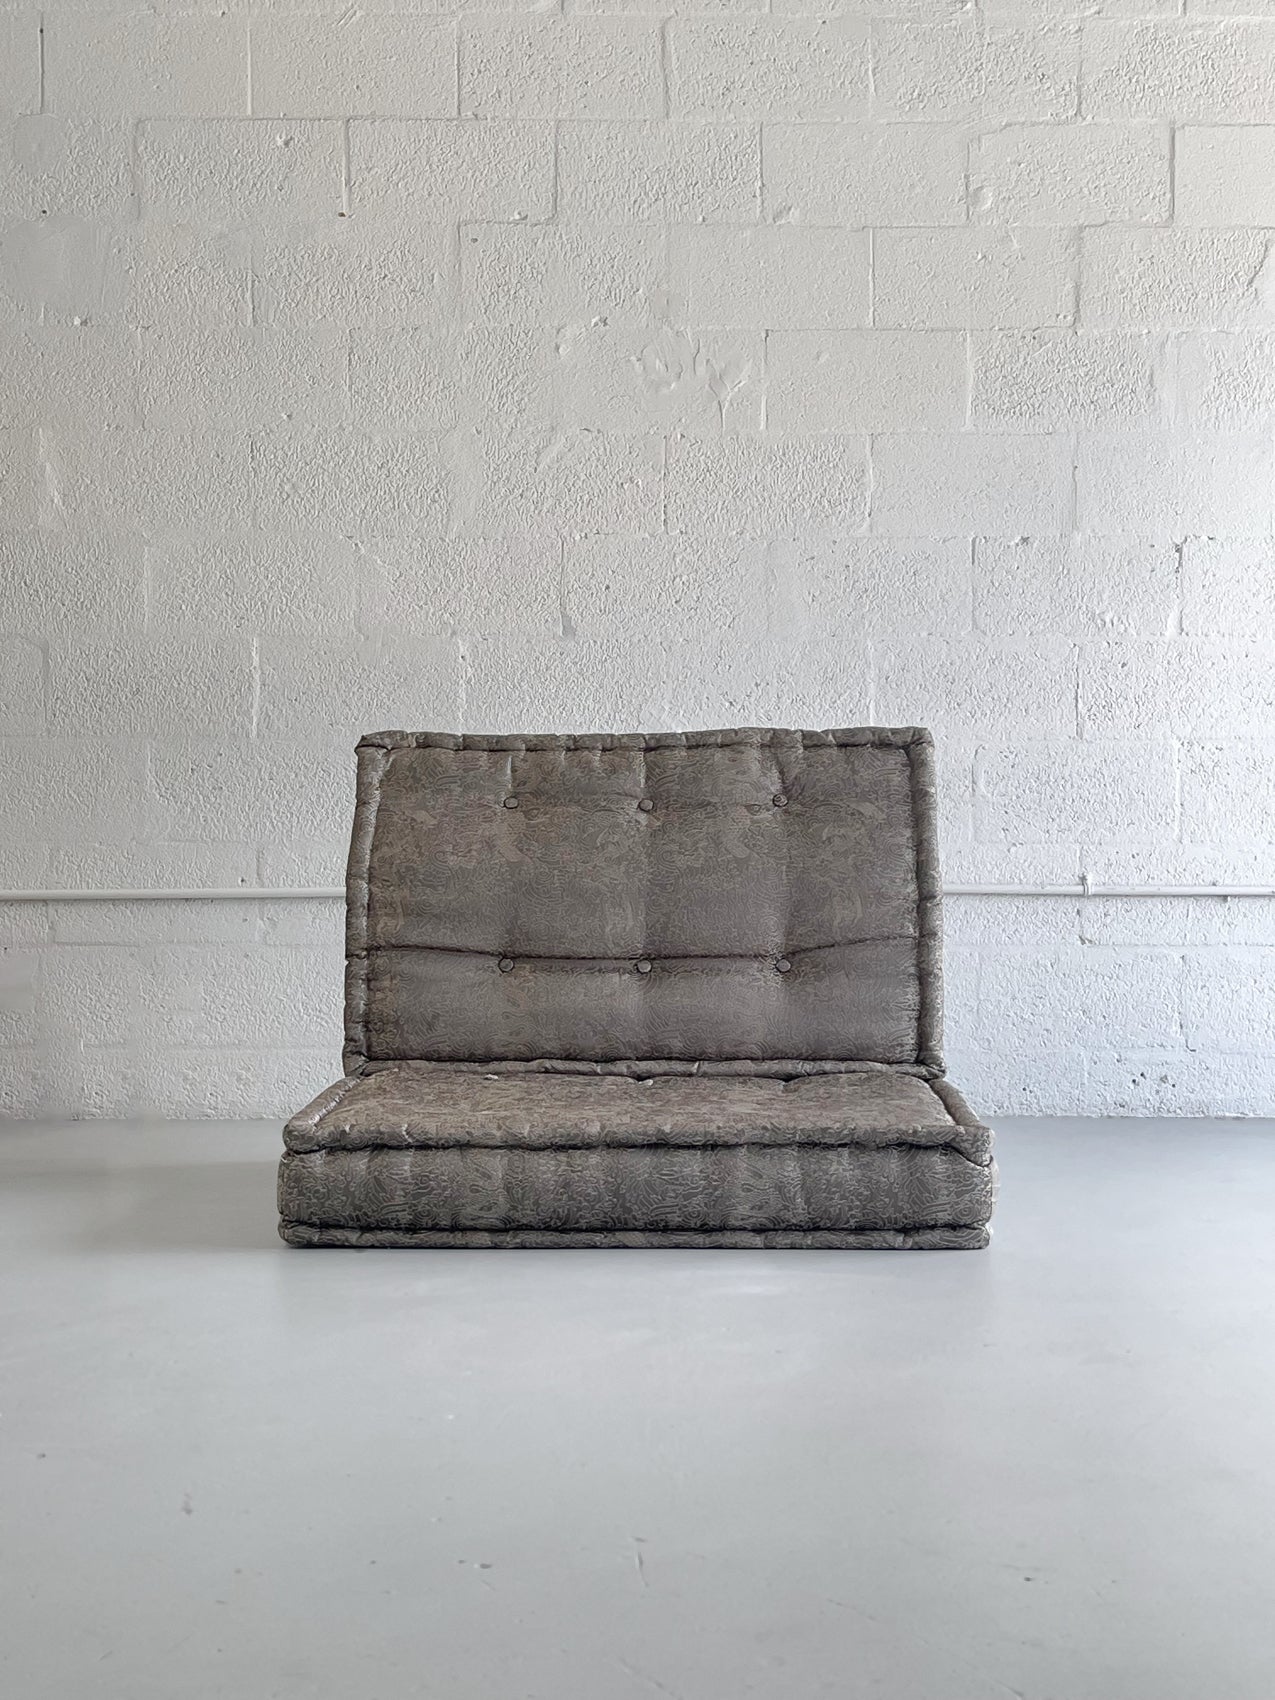 Jean Paul Gaultier 'Mah Jong' Lounge Chair by Roche Bobois